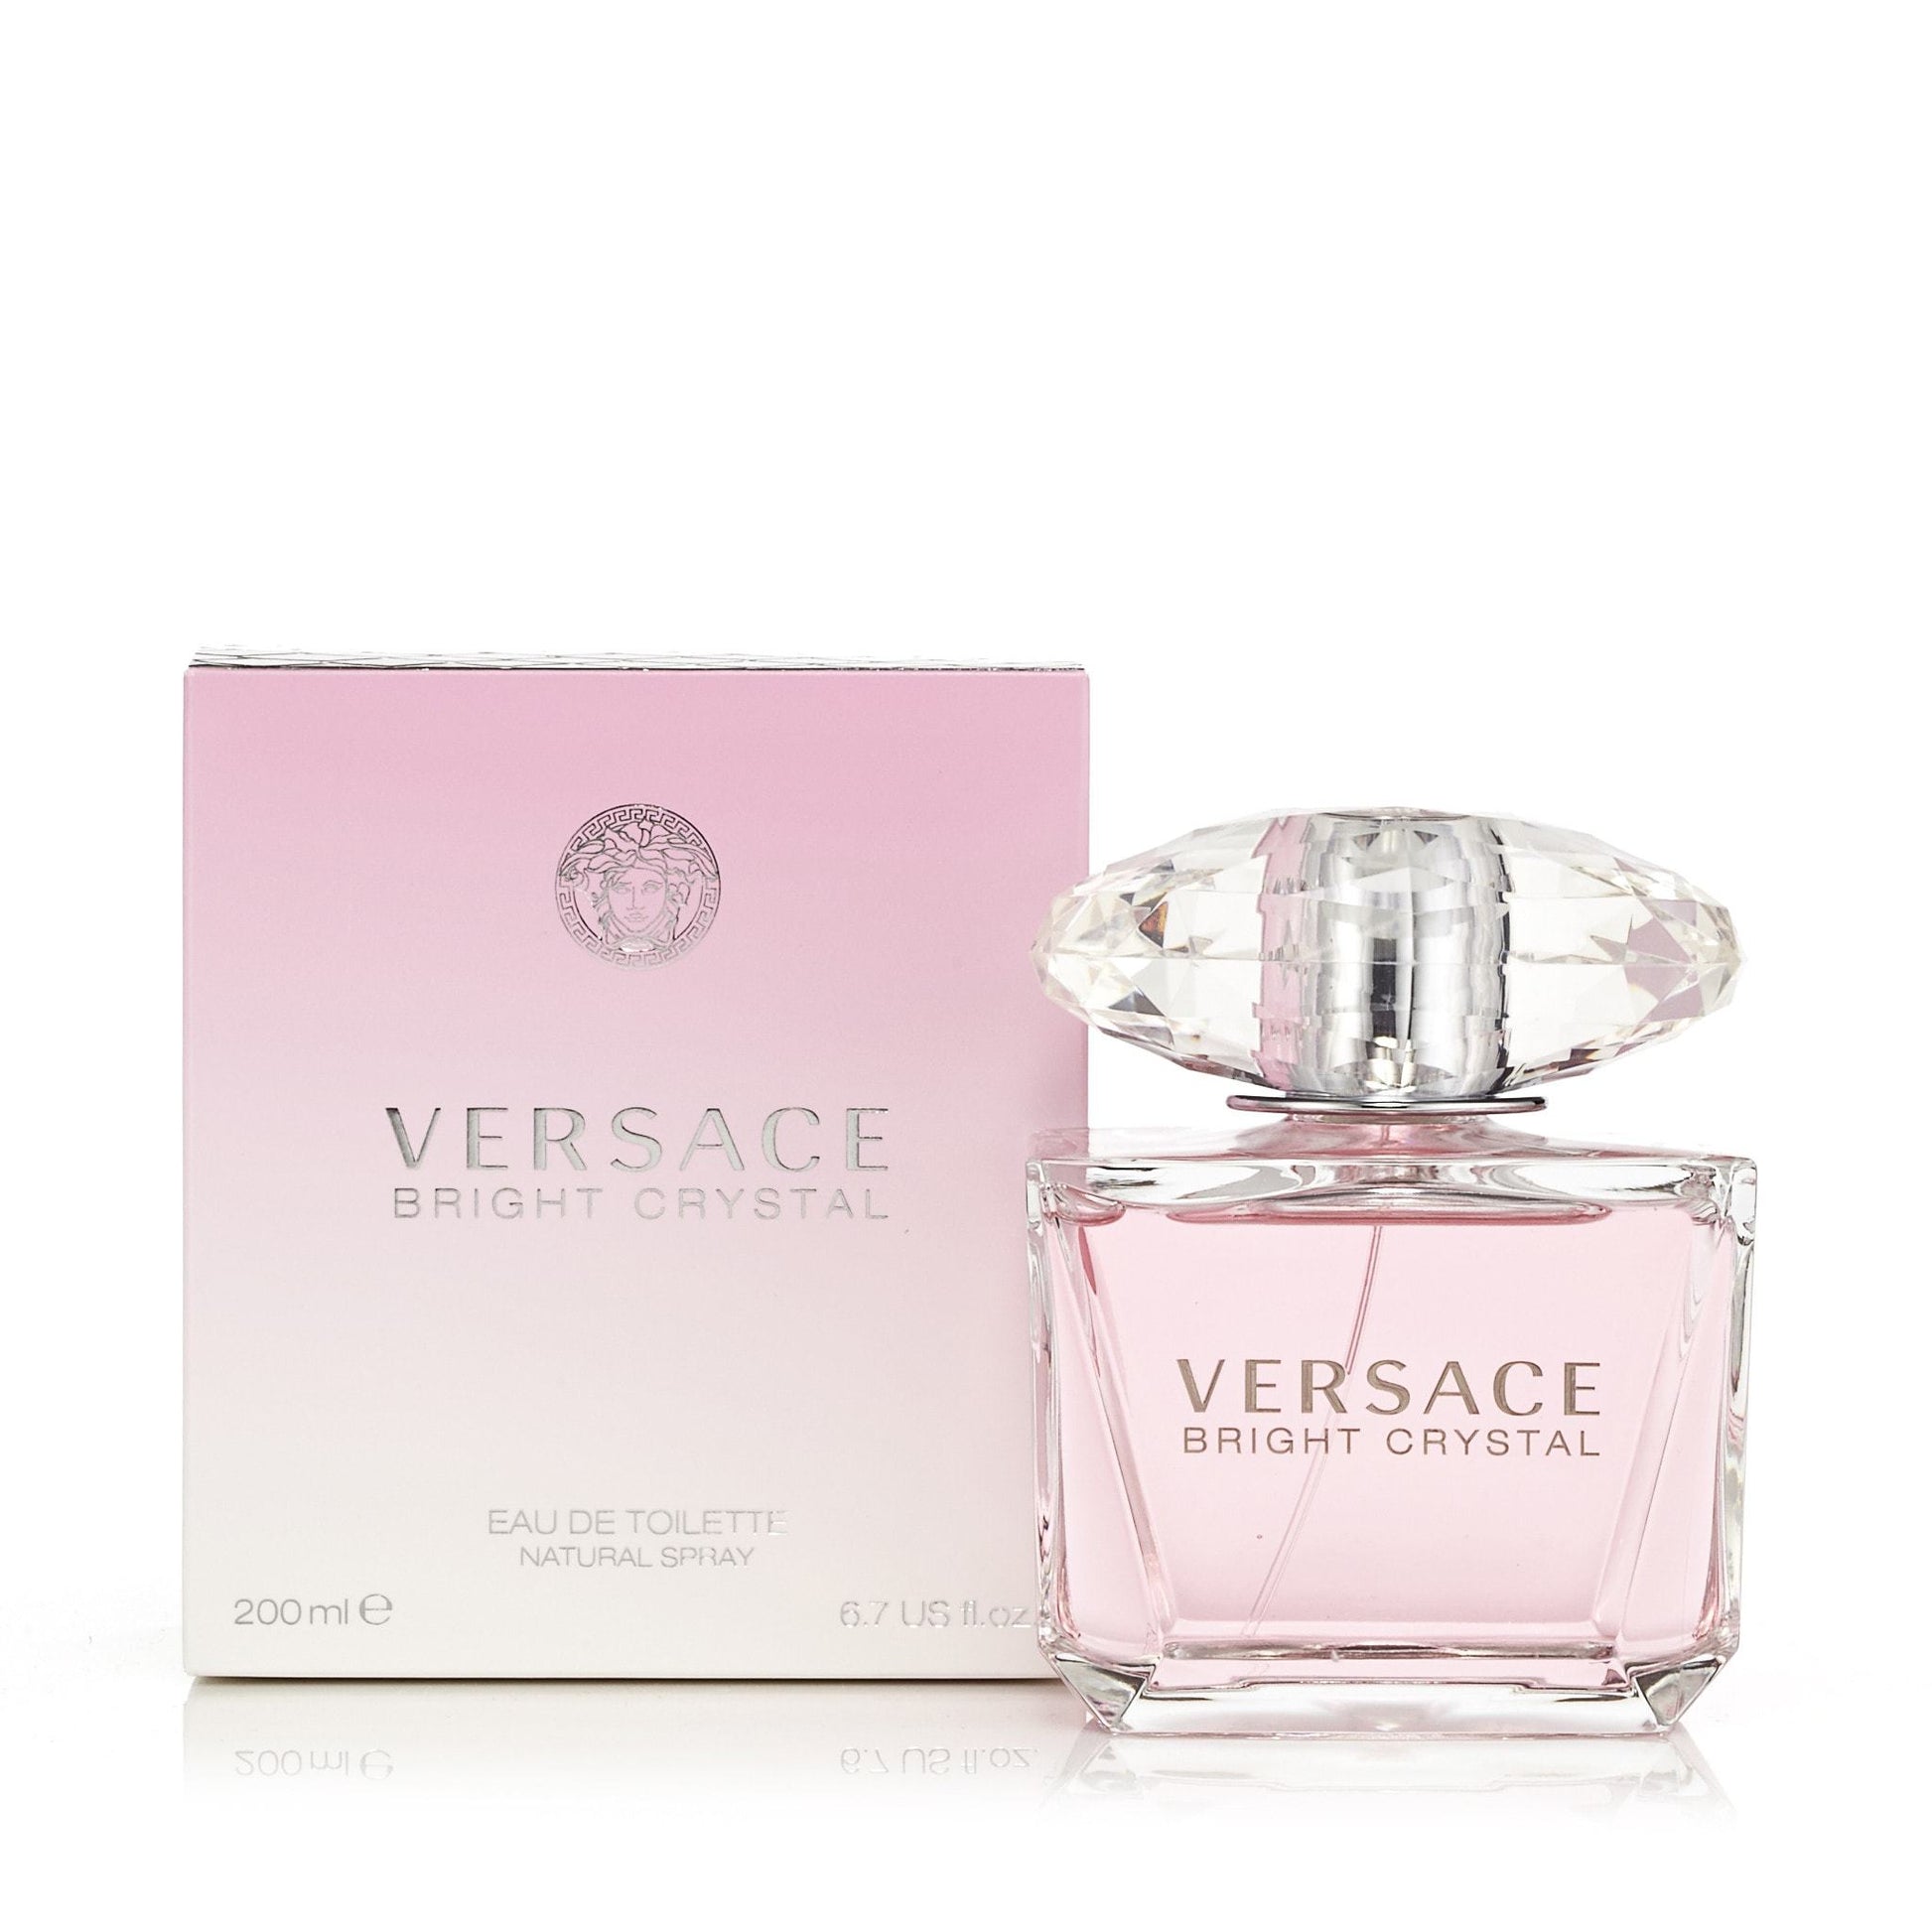 Versace Bright Crystal Toilette de Women – for Eau Outlet Perfume Fragrance